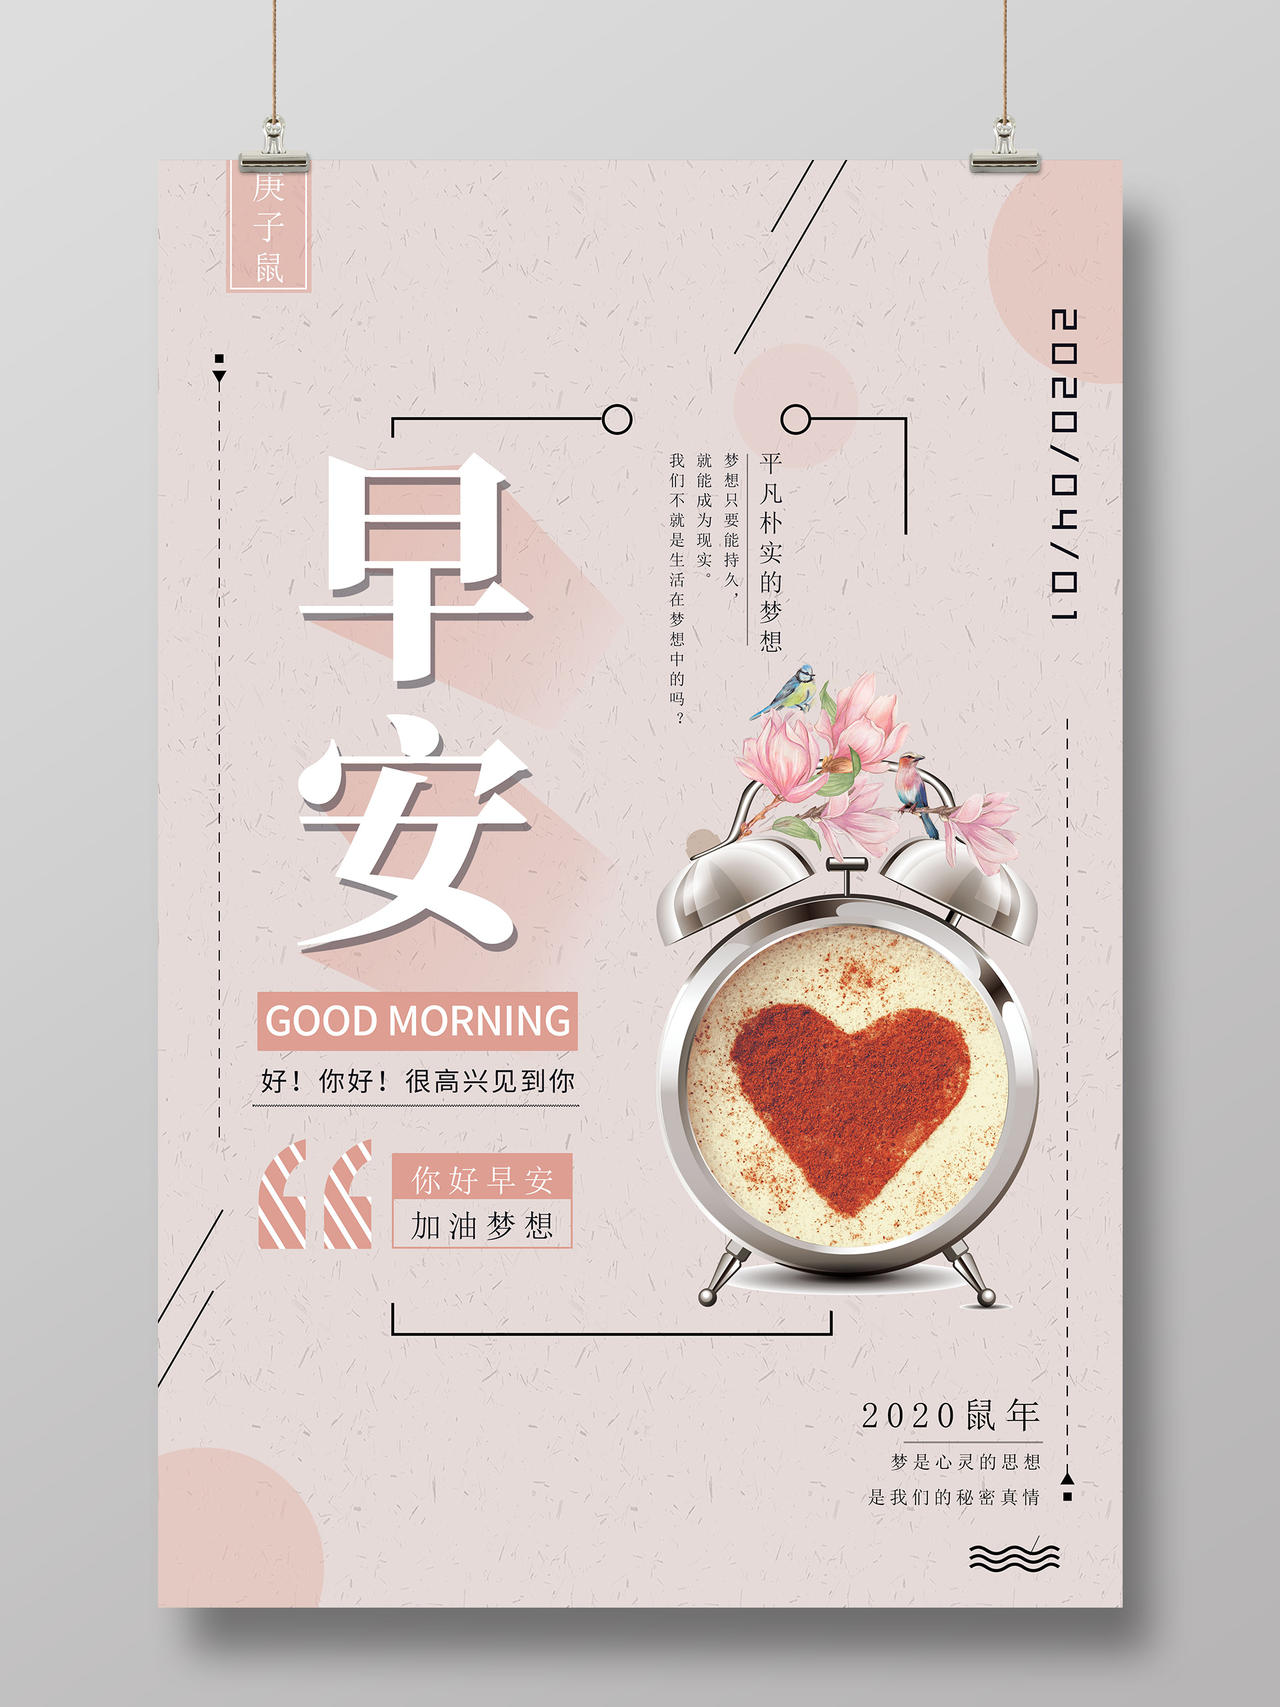 早餐咖啡清新你好早安时光早餐美食海报宣传创意早安202020